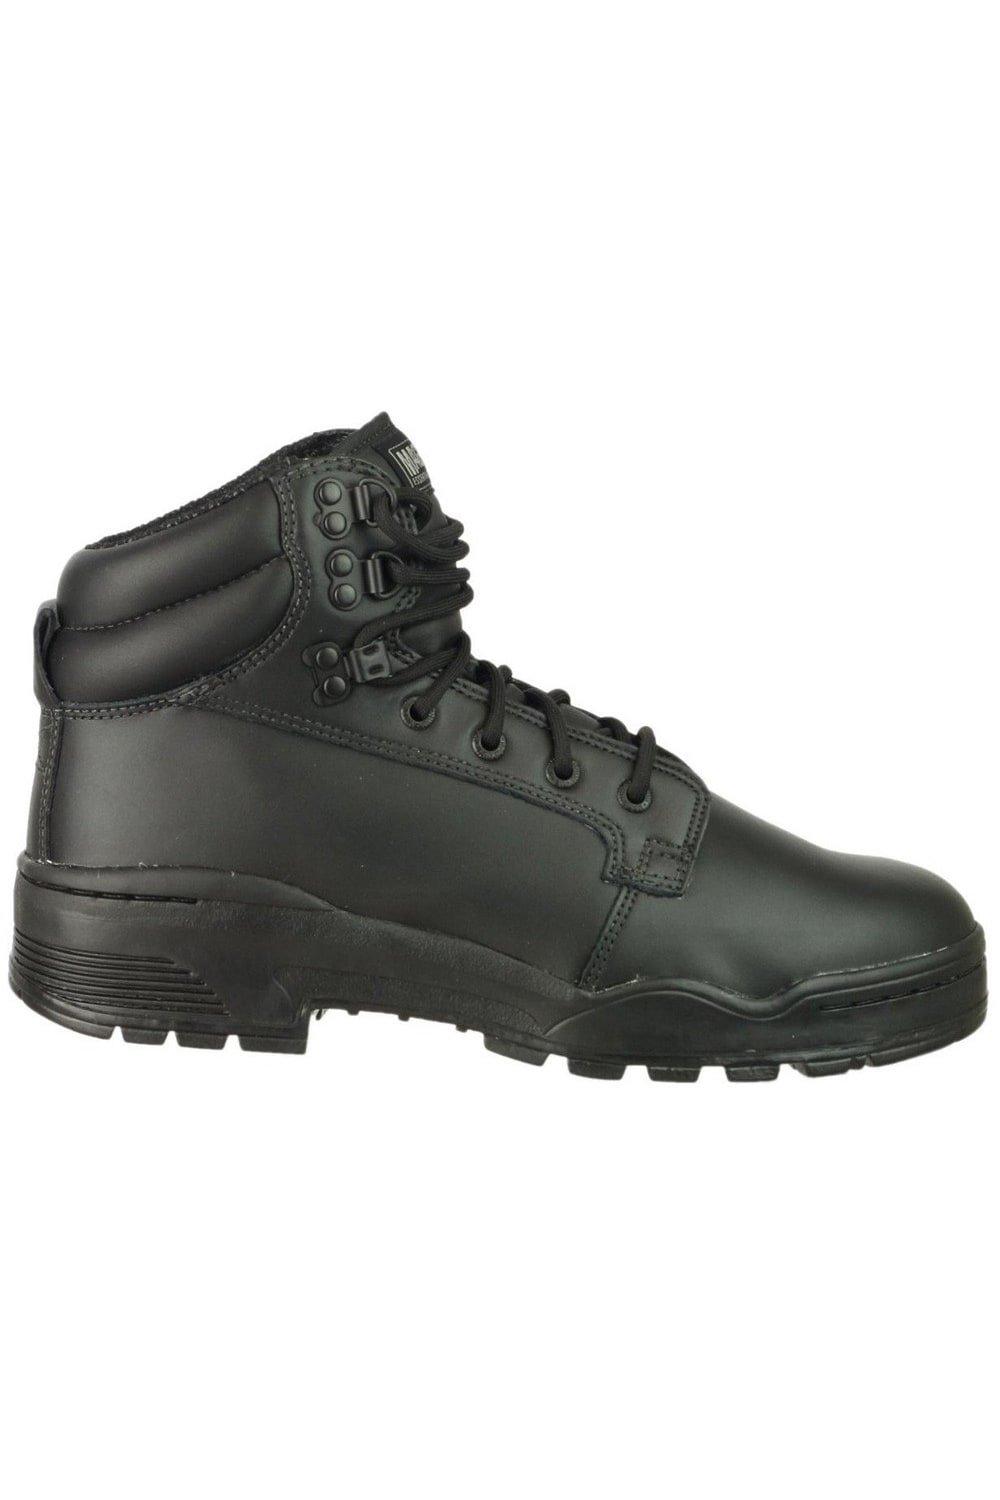 Patrol CEN (11891) Ботинки Ботинки Magnum, черный